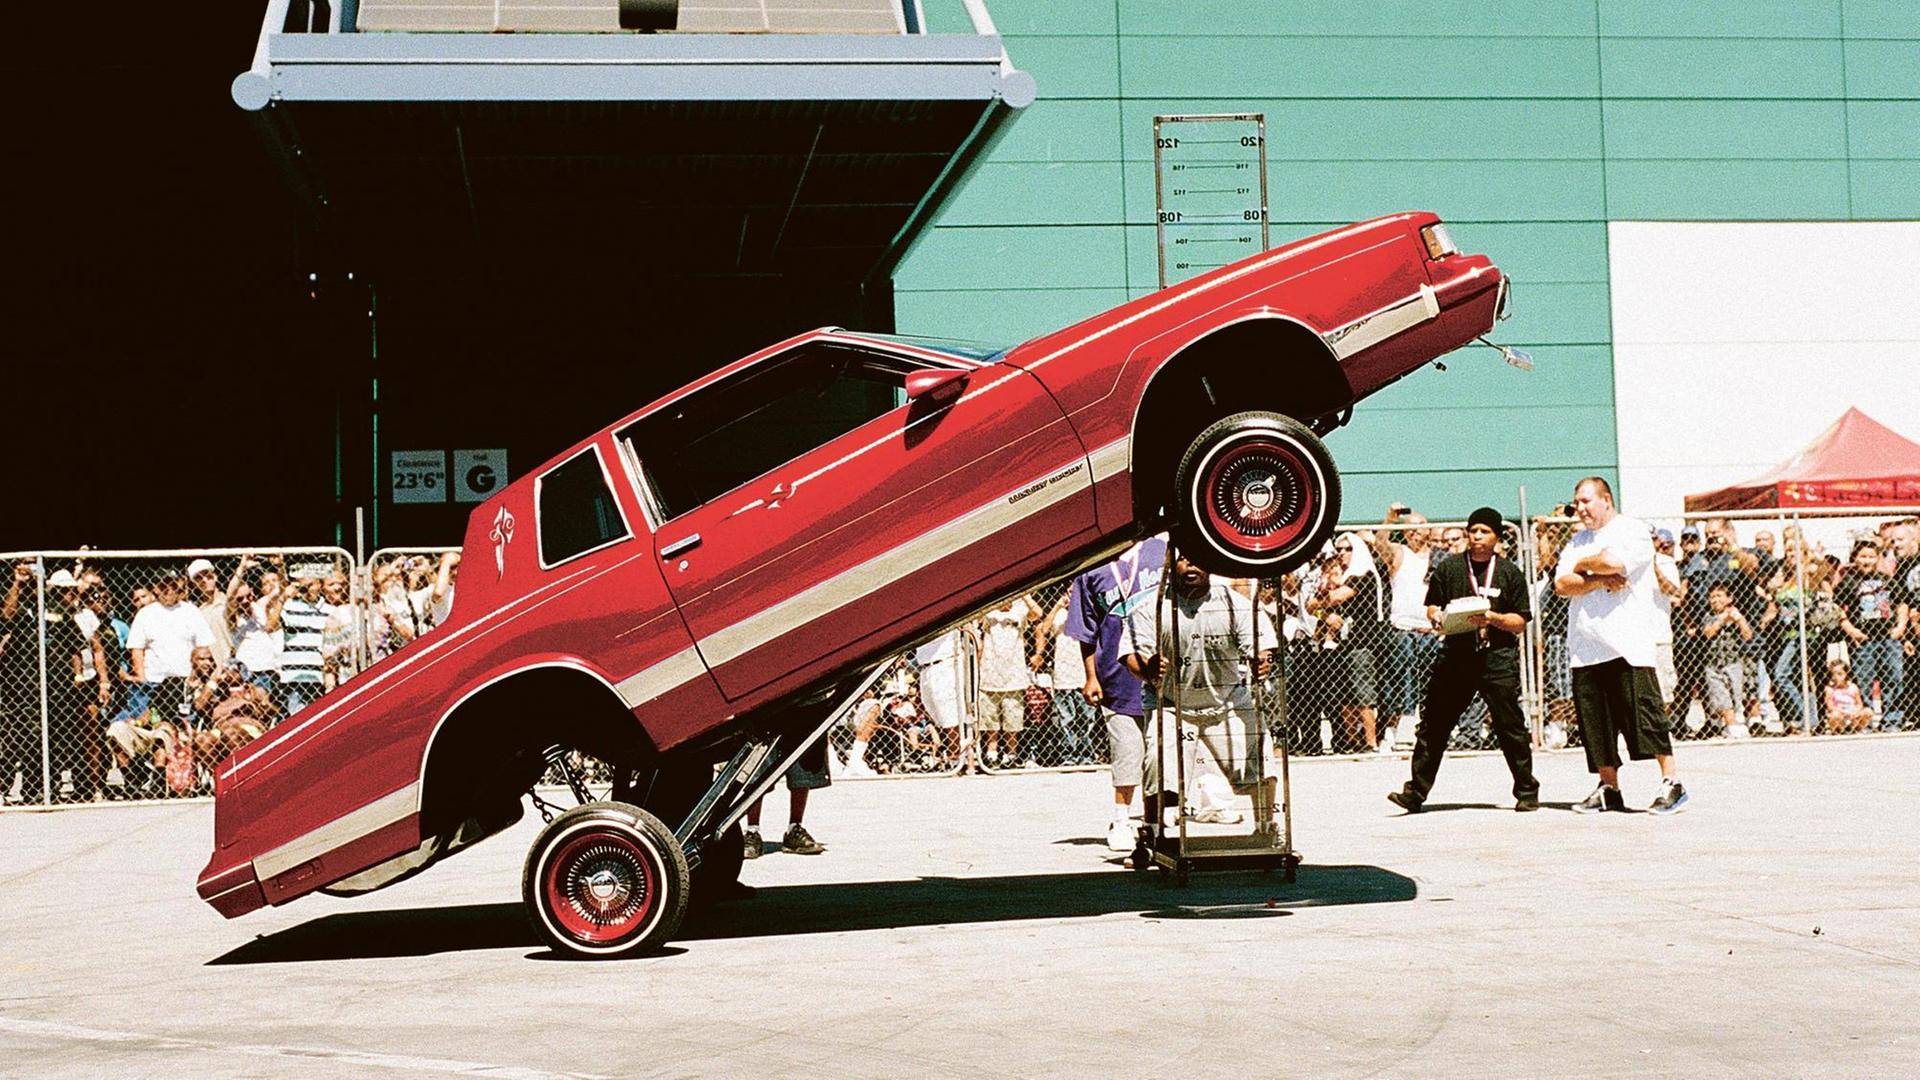 Dieses Foto von Nathanael Turner zeigt einen Lowrider, also ein Auto, das sich dank extra eingebauter Hydrauliksysteme hüpfend fortbewegen kann.